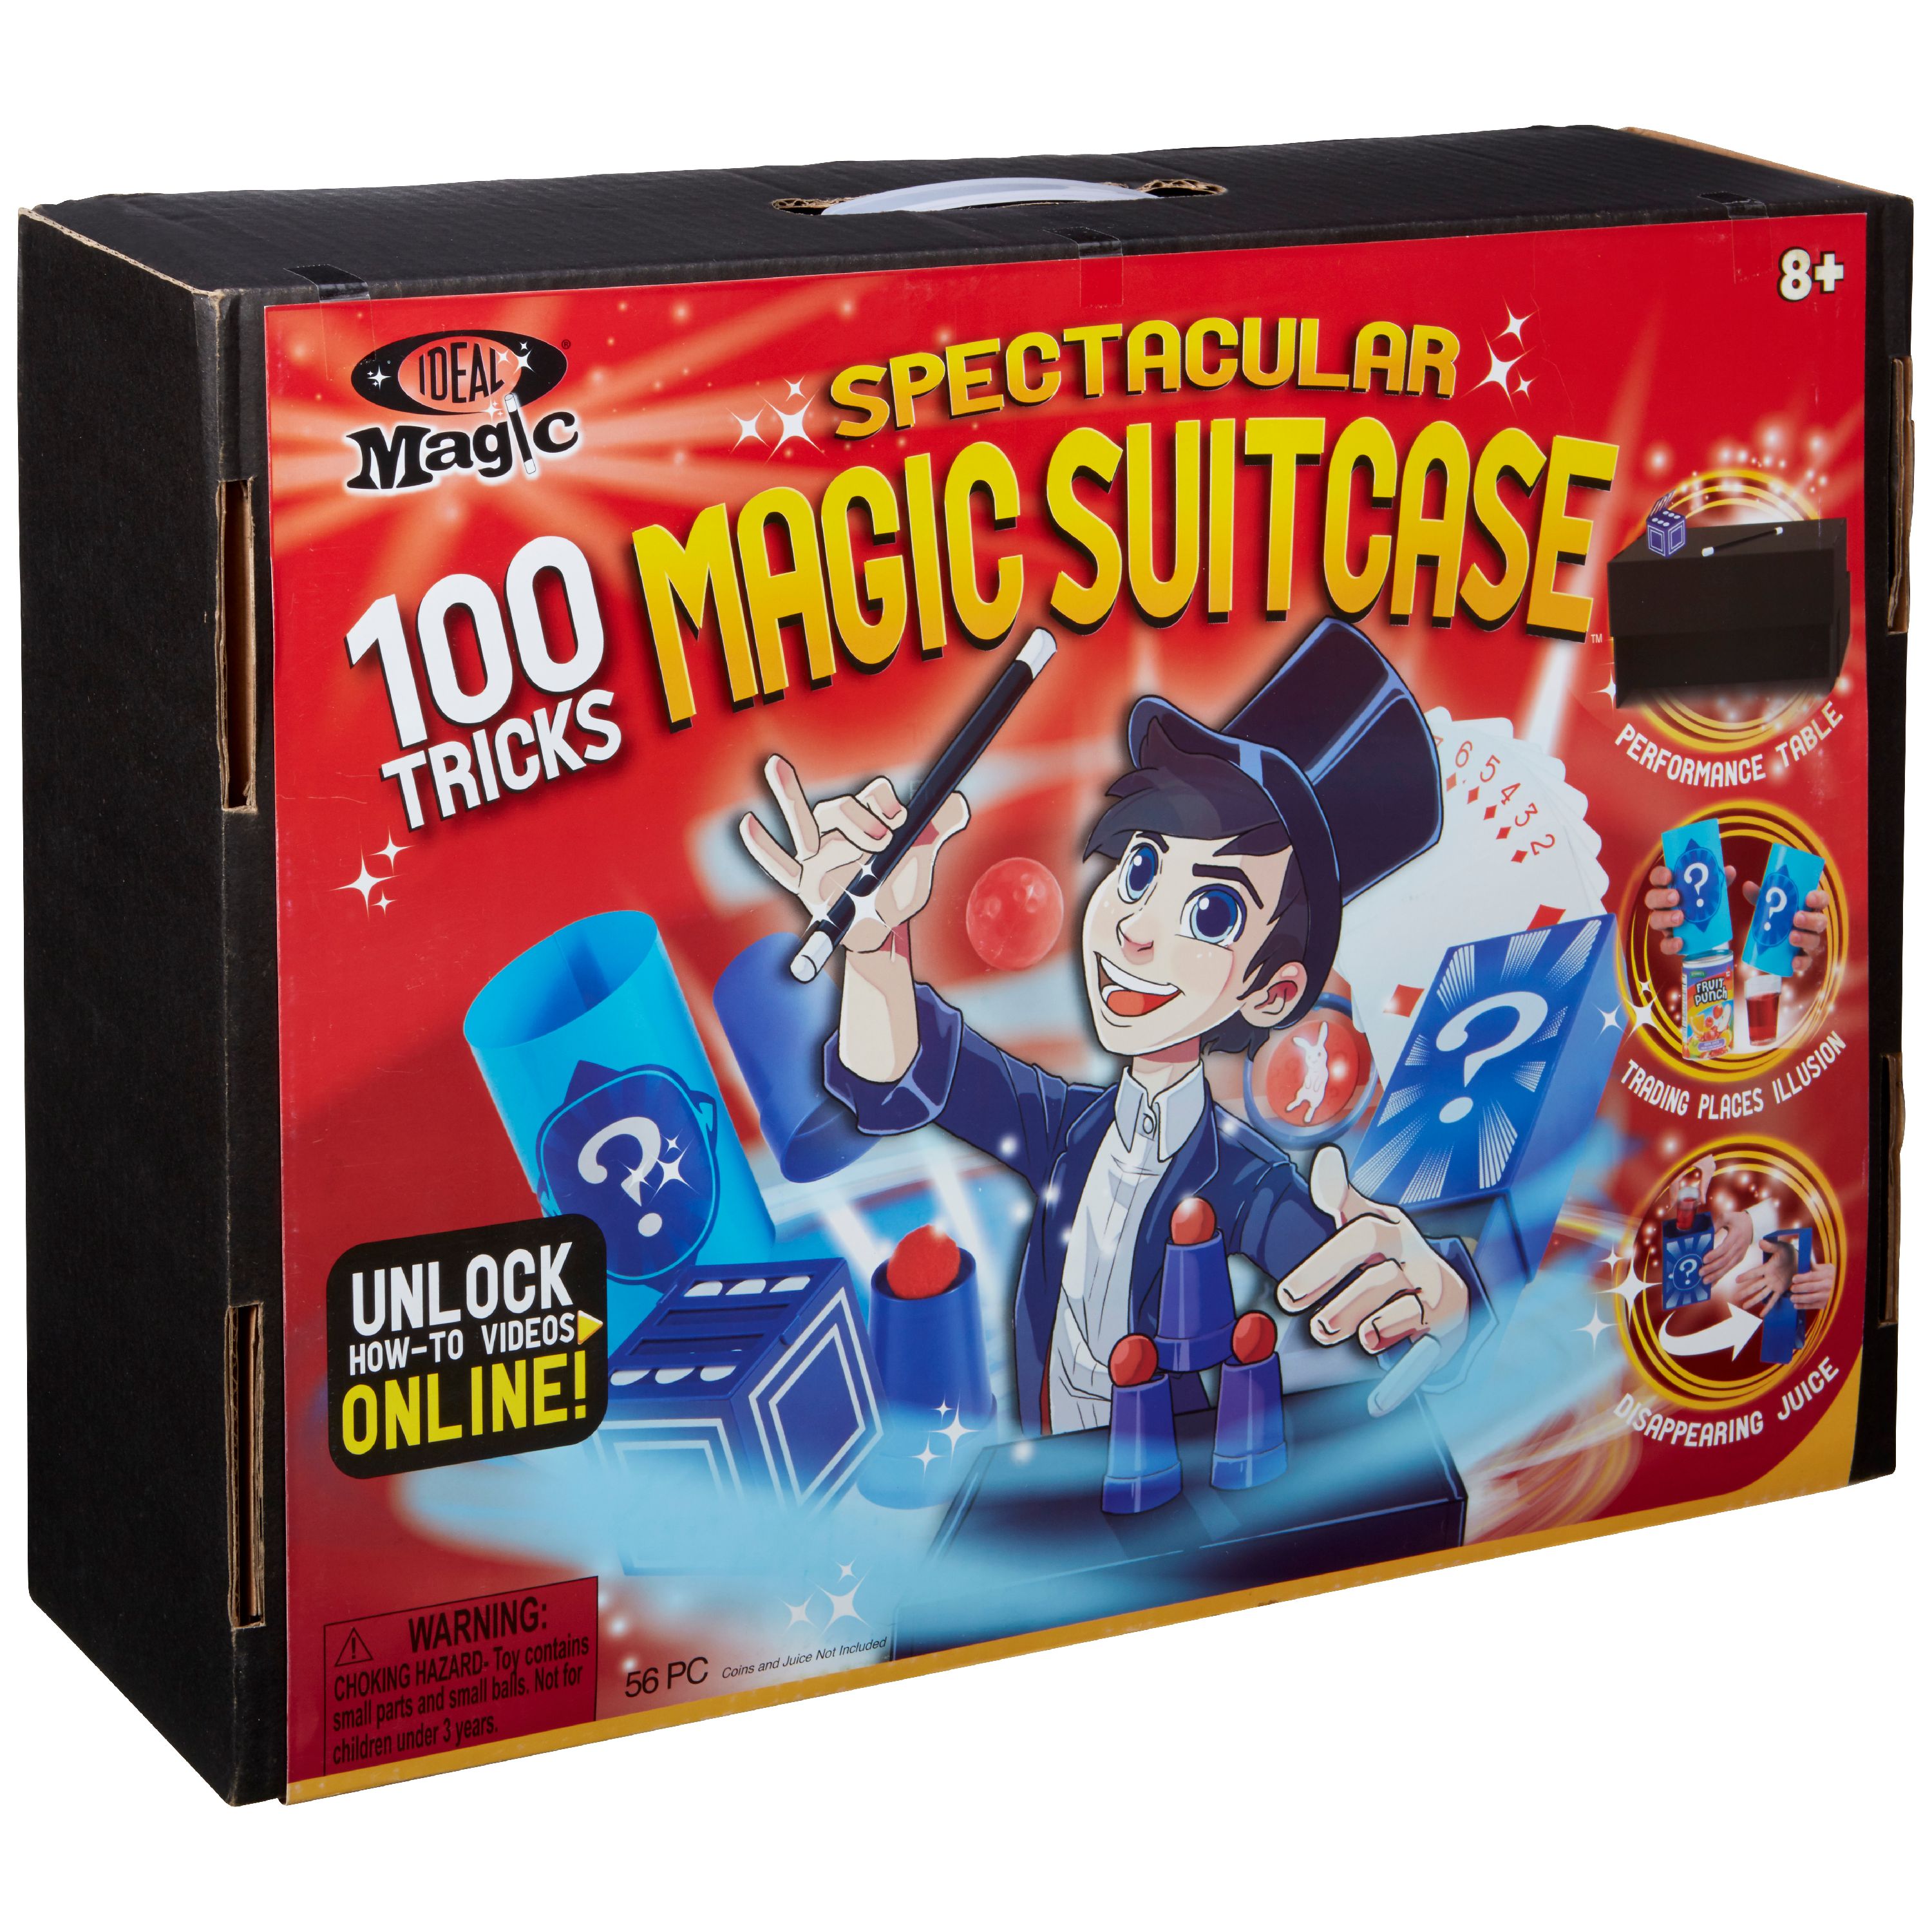 Ideal Magic Spectacular Magic Suitcase - image 1 of 5